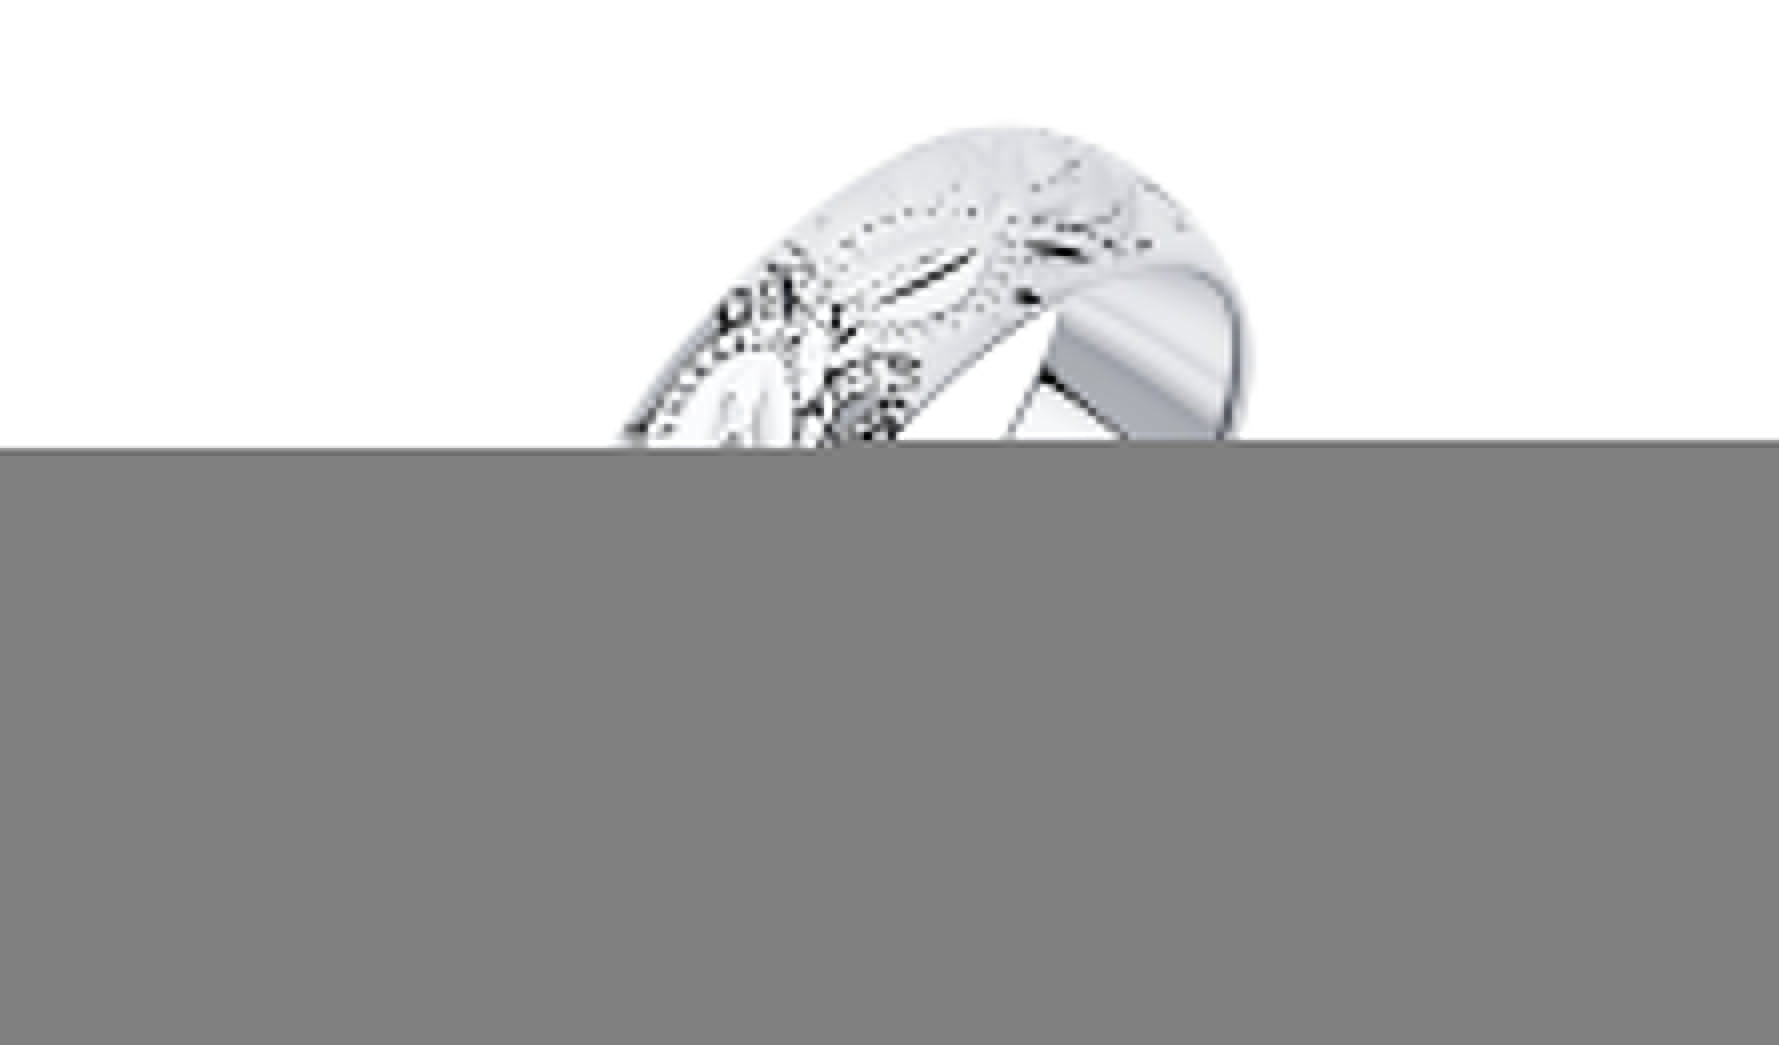 Кольцо обручальное серебряное Sokolov кольцо обручальное серебряное diamant